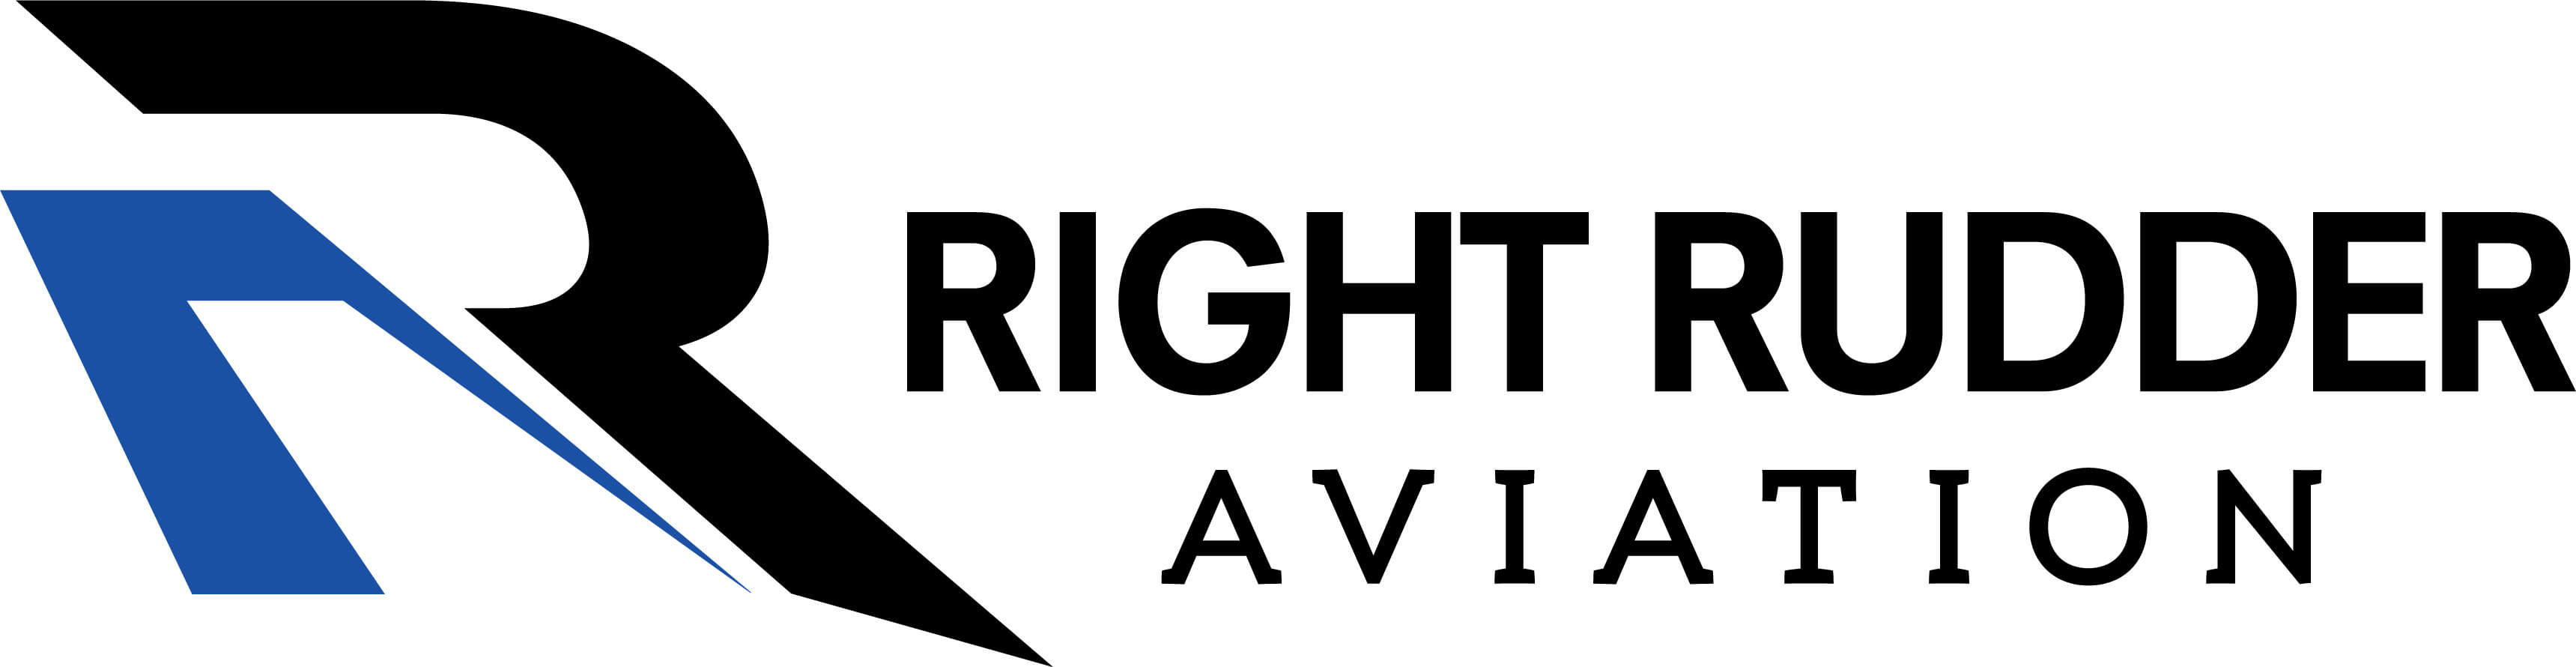 Right Rudder Aviation Logo